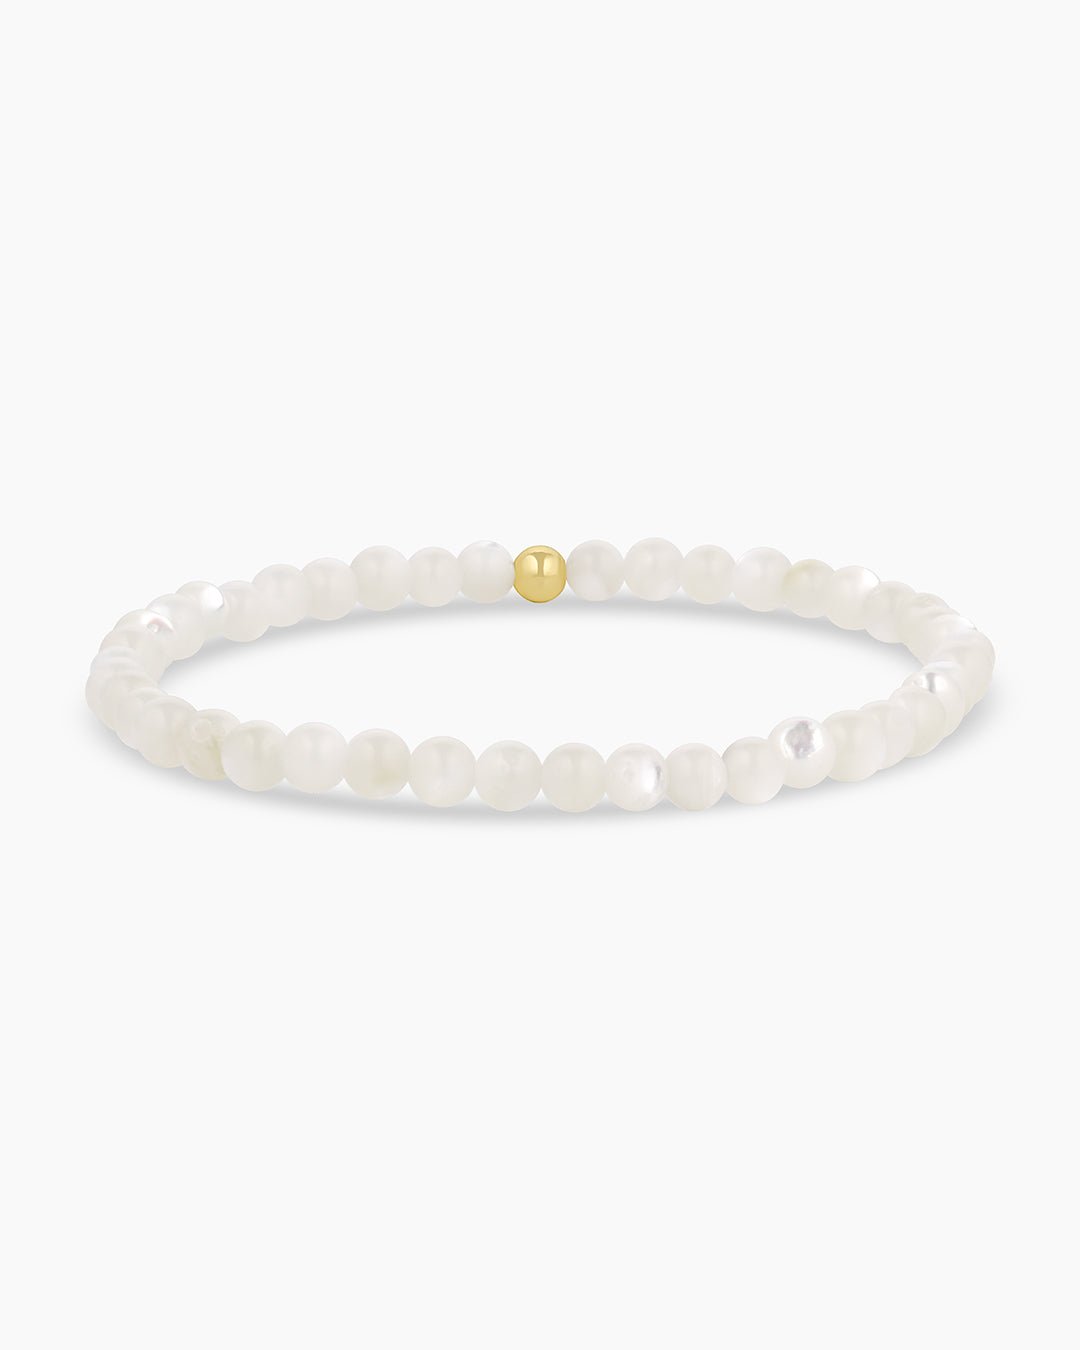 Carter Gemstone Bracelet || option::Gold Plated, Mother of Pearl